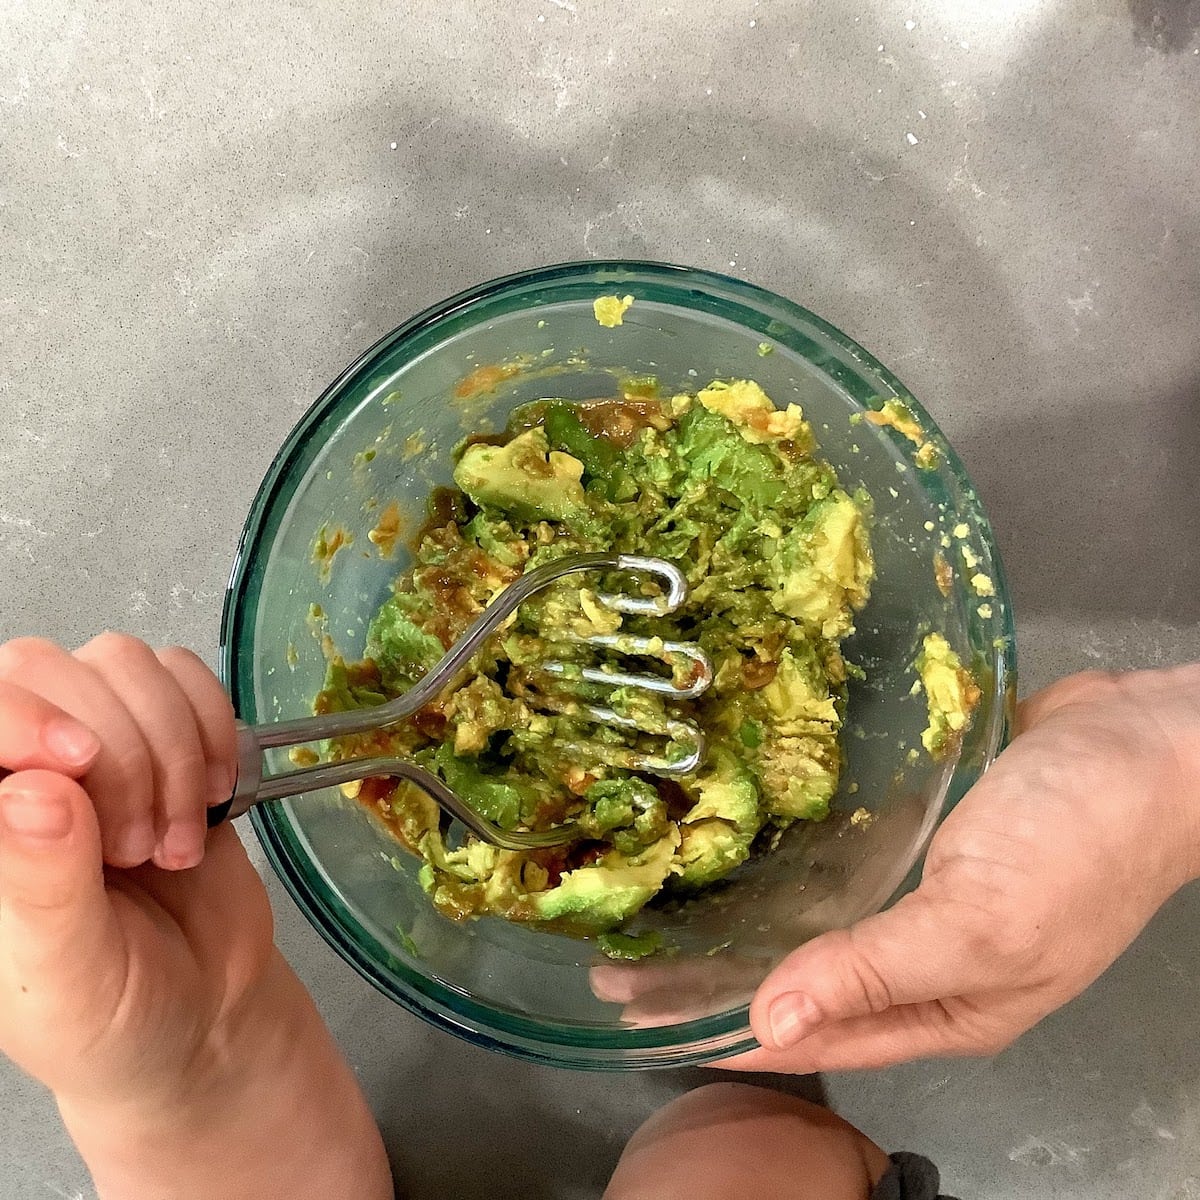 mixing guacamole in bowl using potato masher